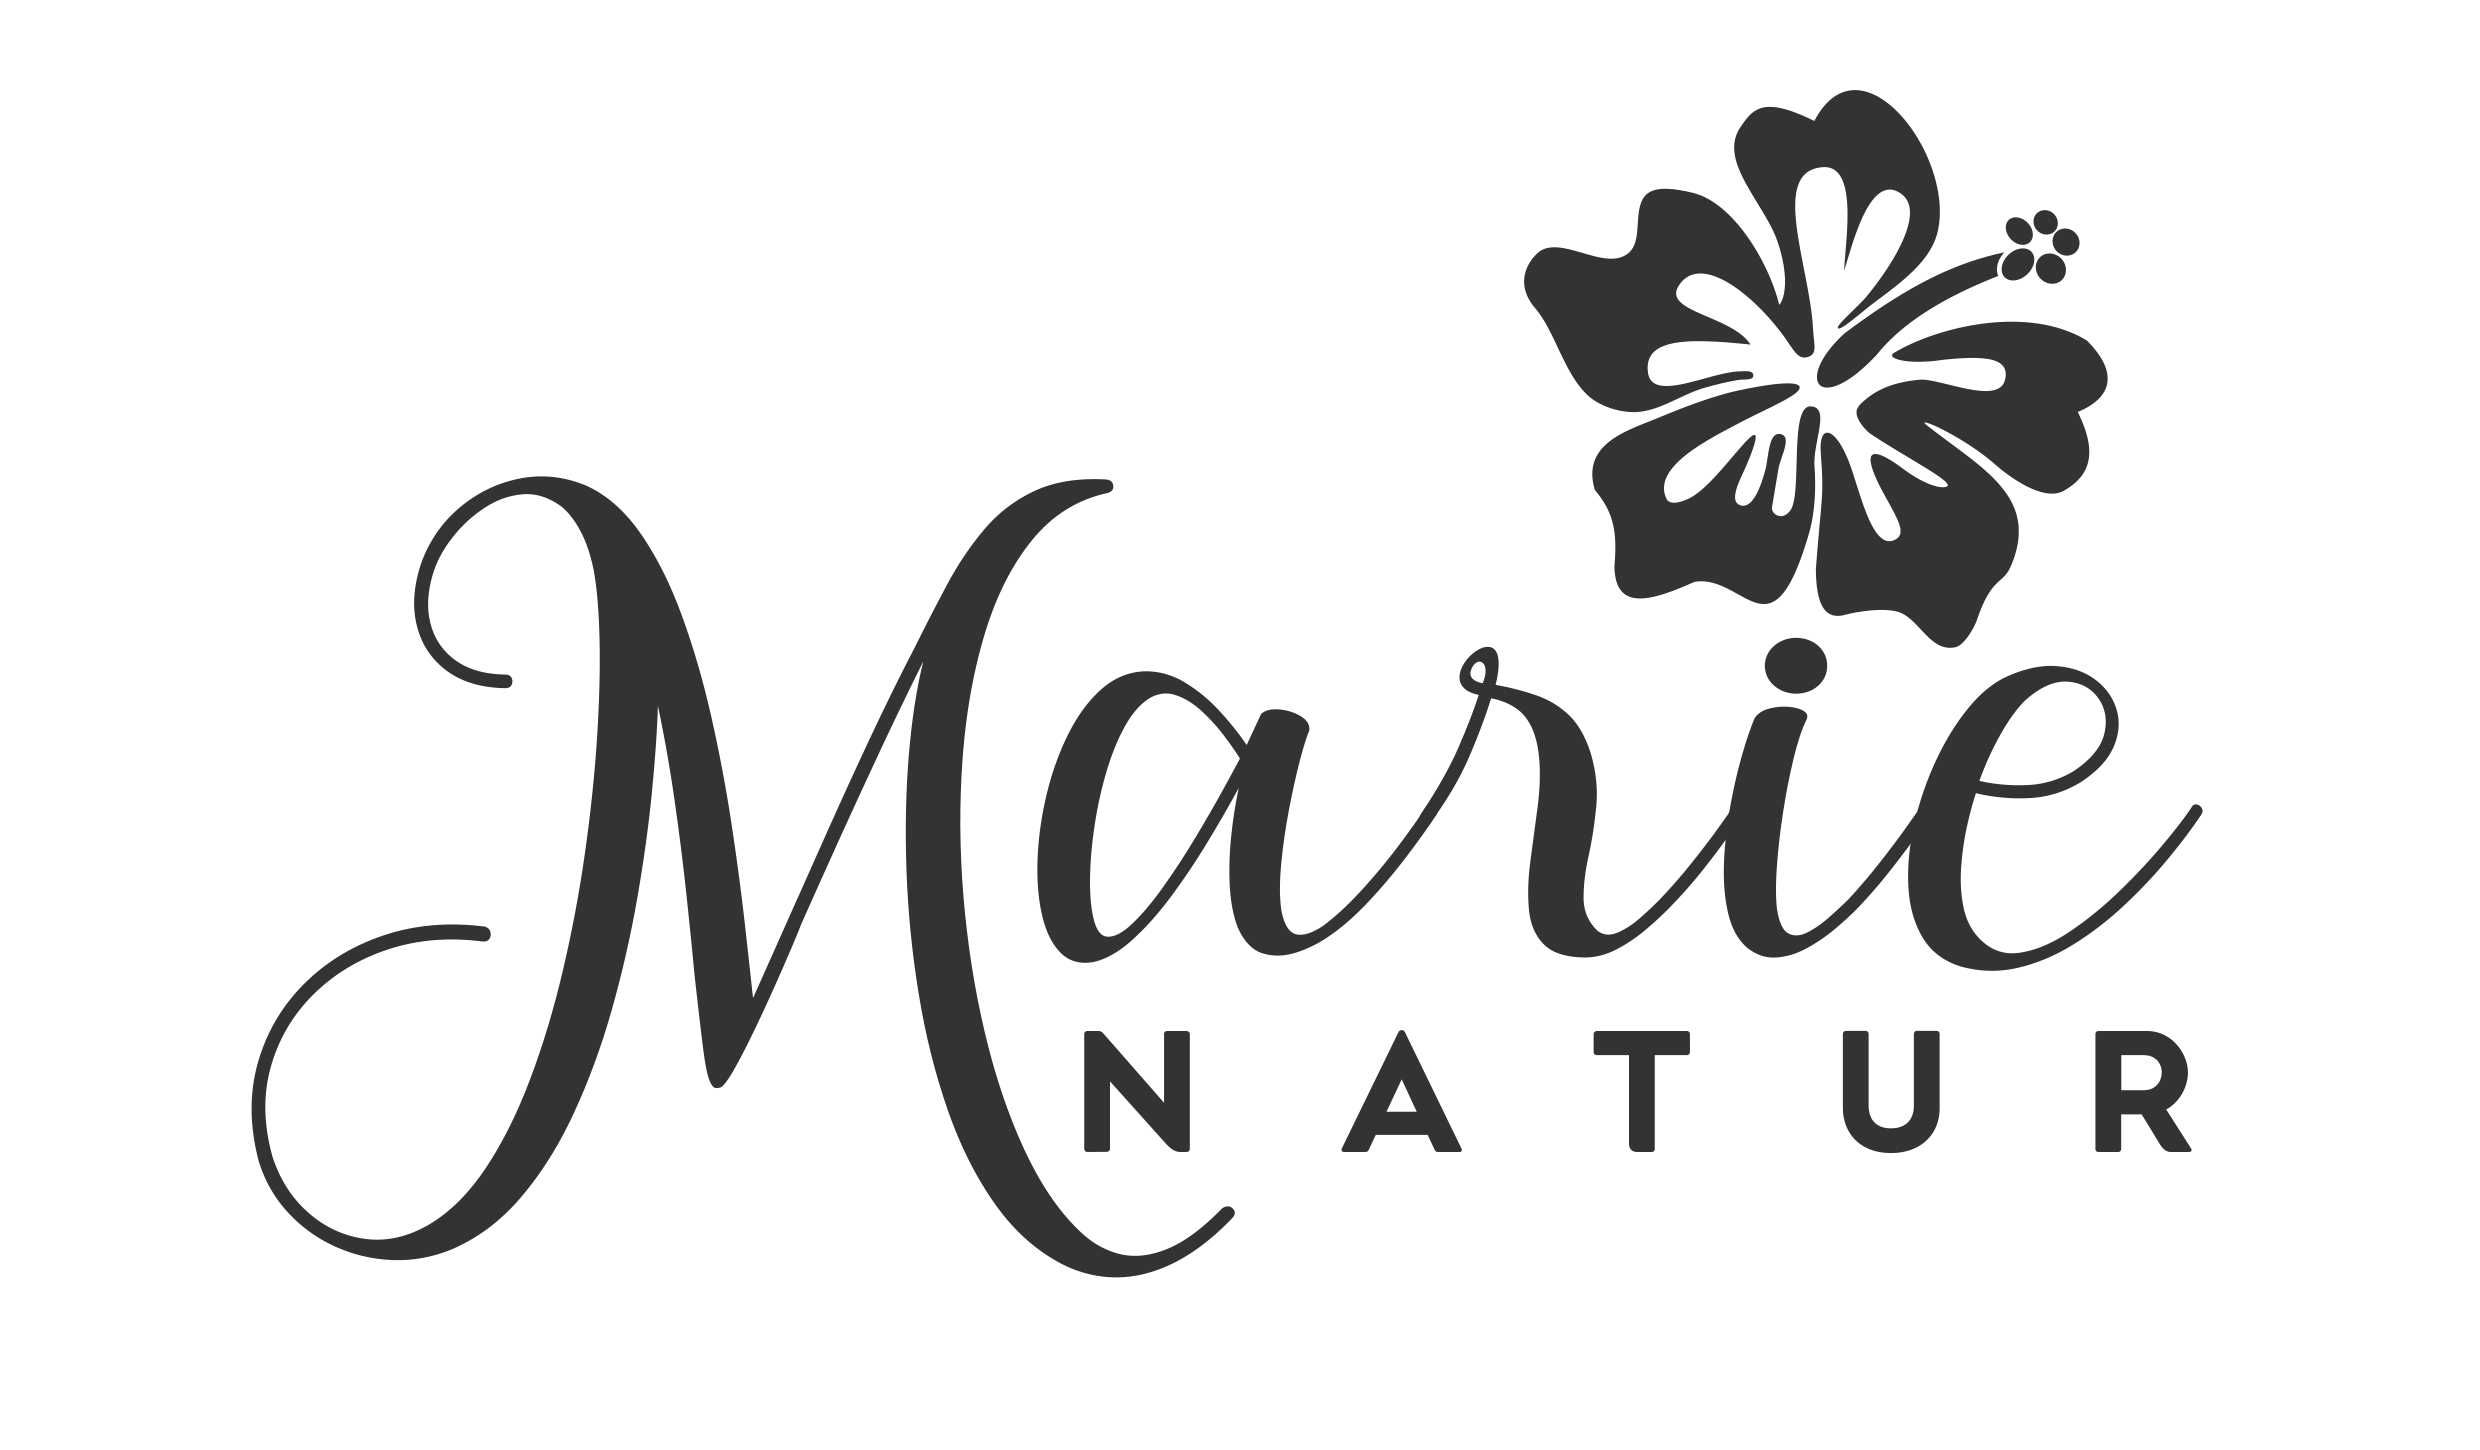 Marie Natur